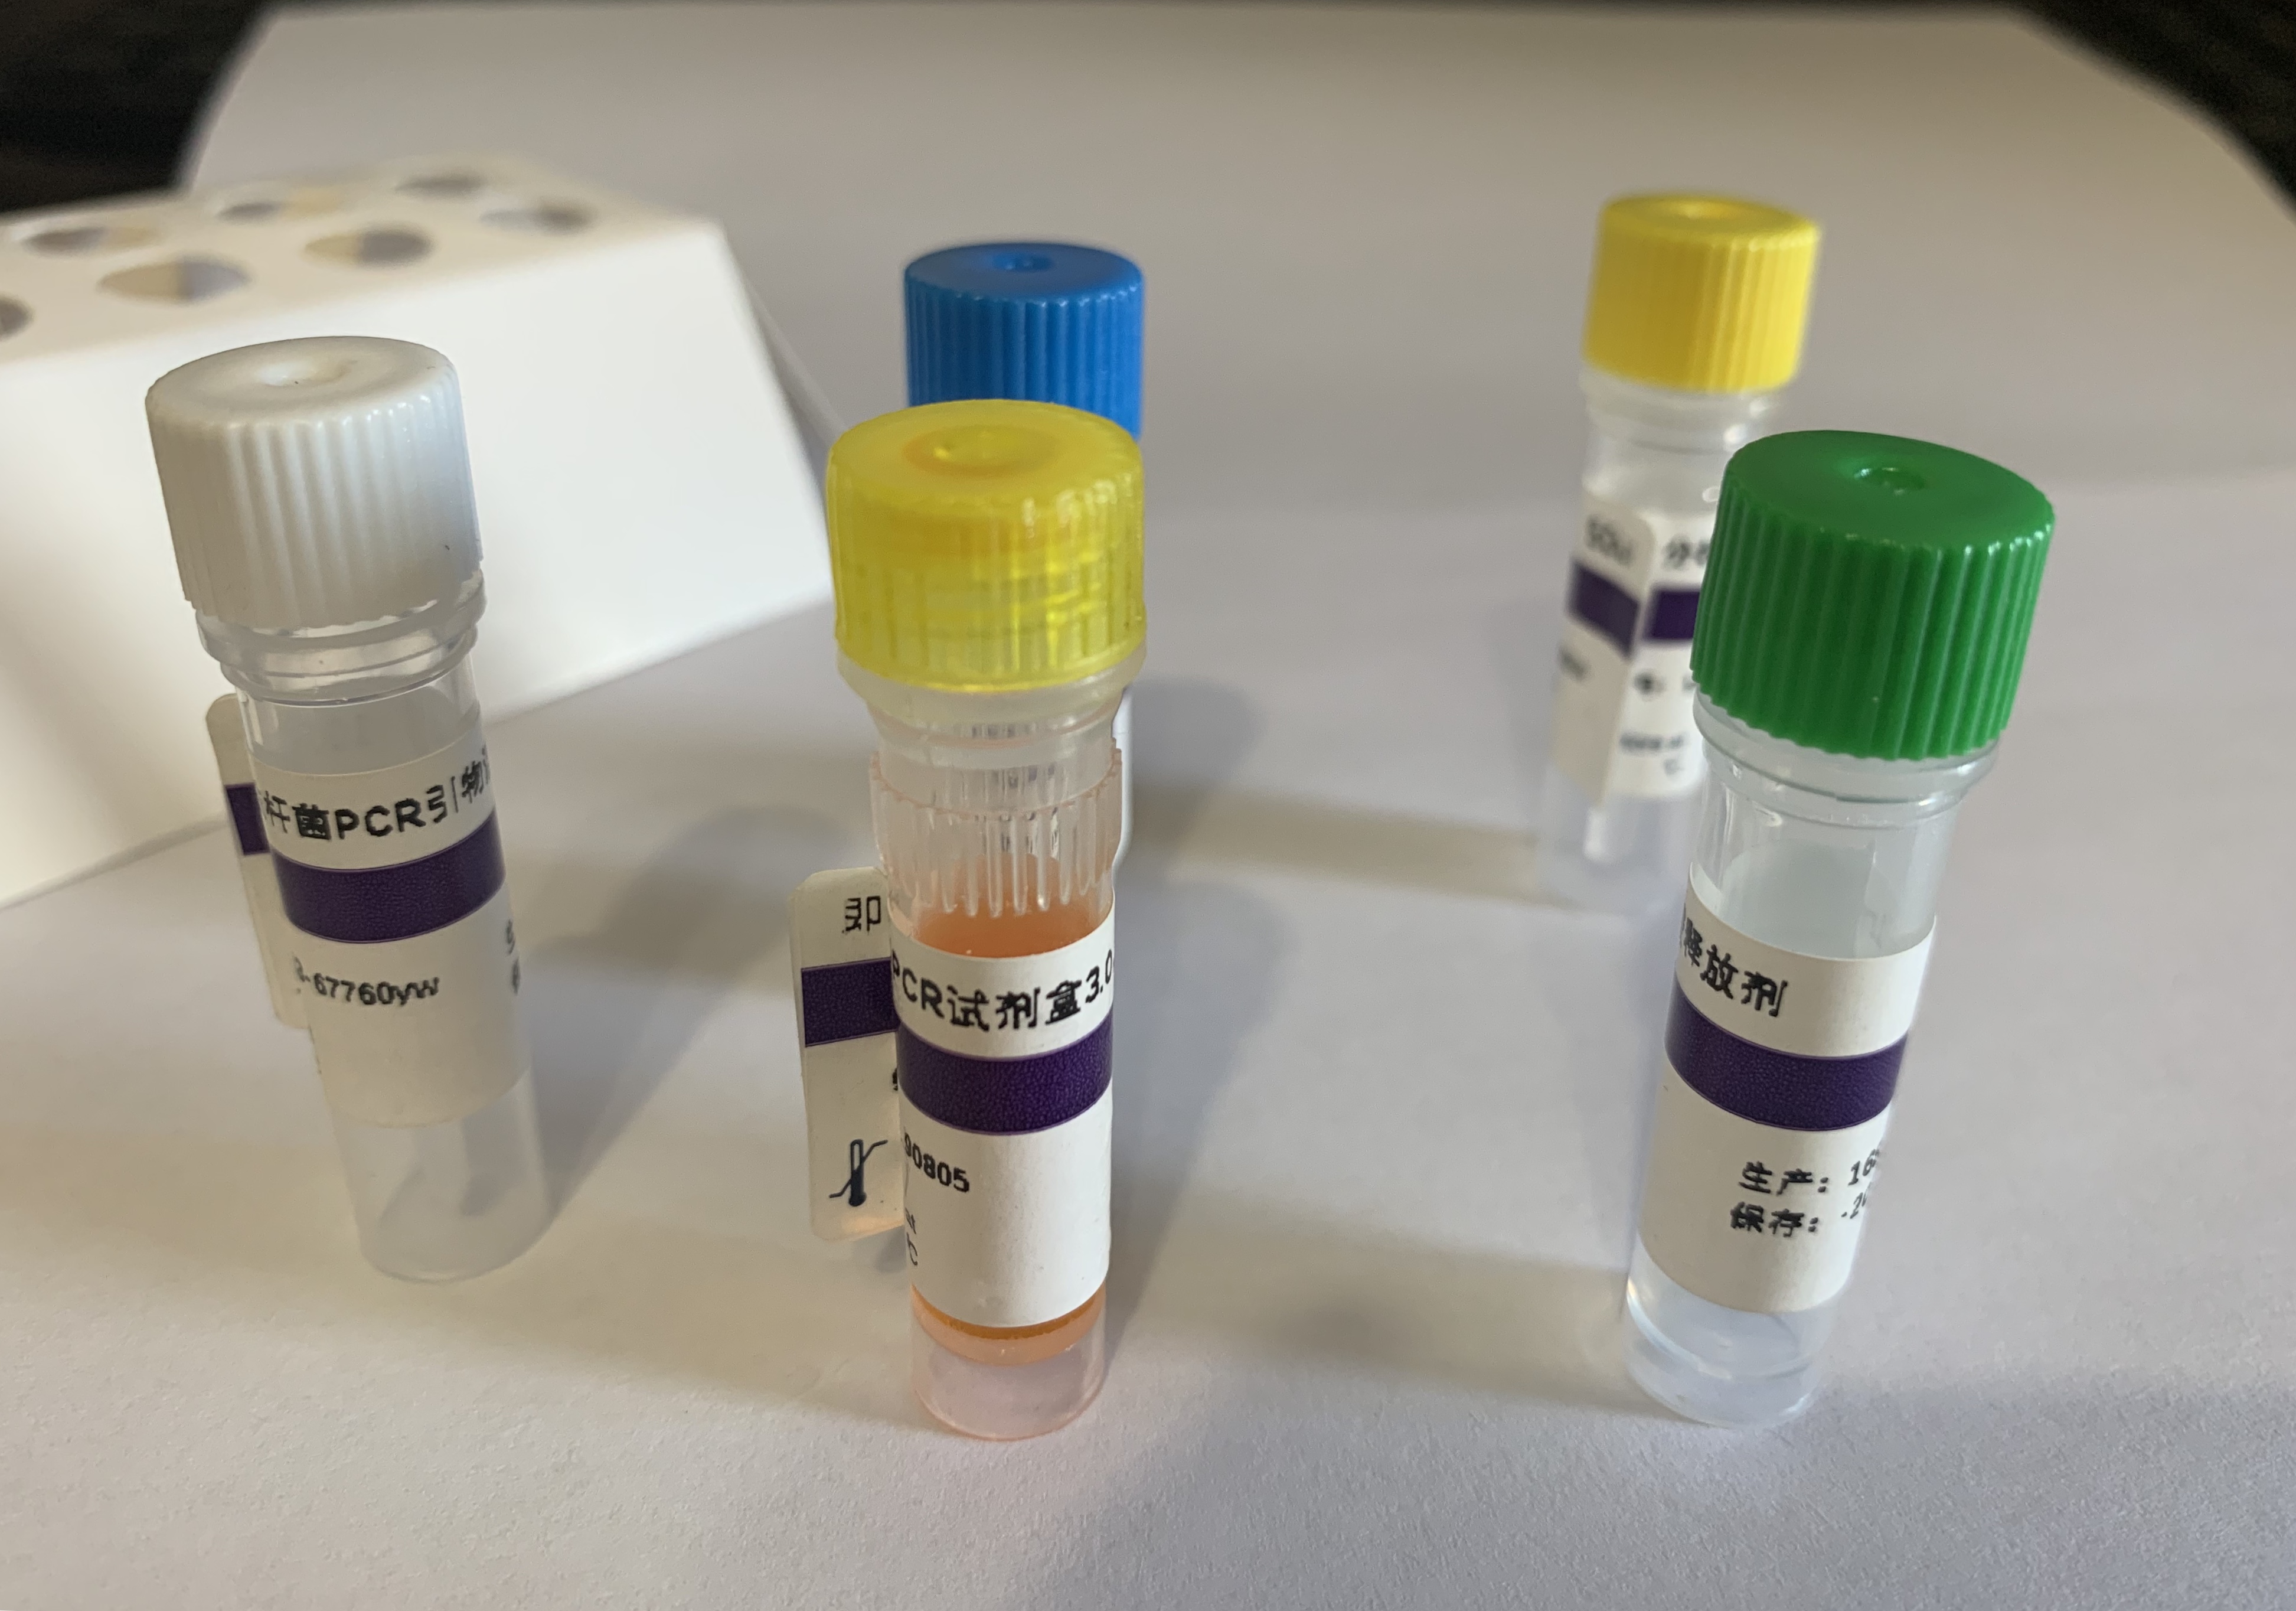 禽沙门氏菌PCR检测试剂盒